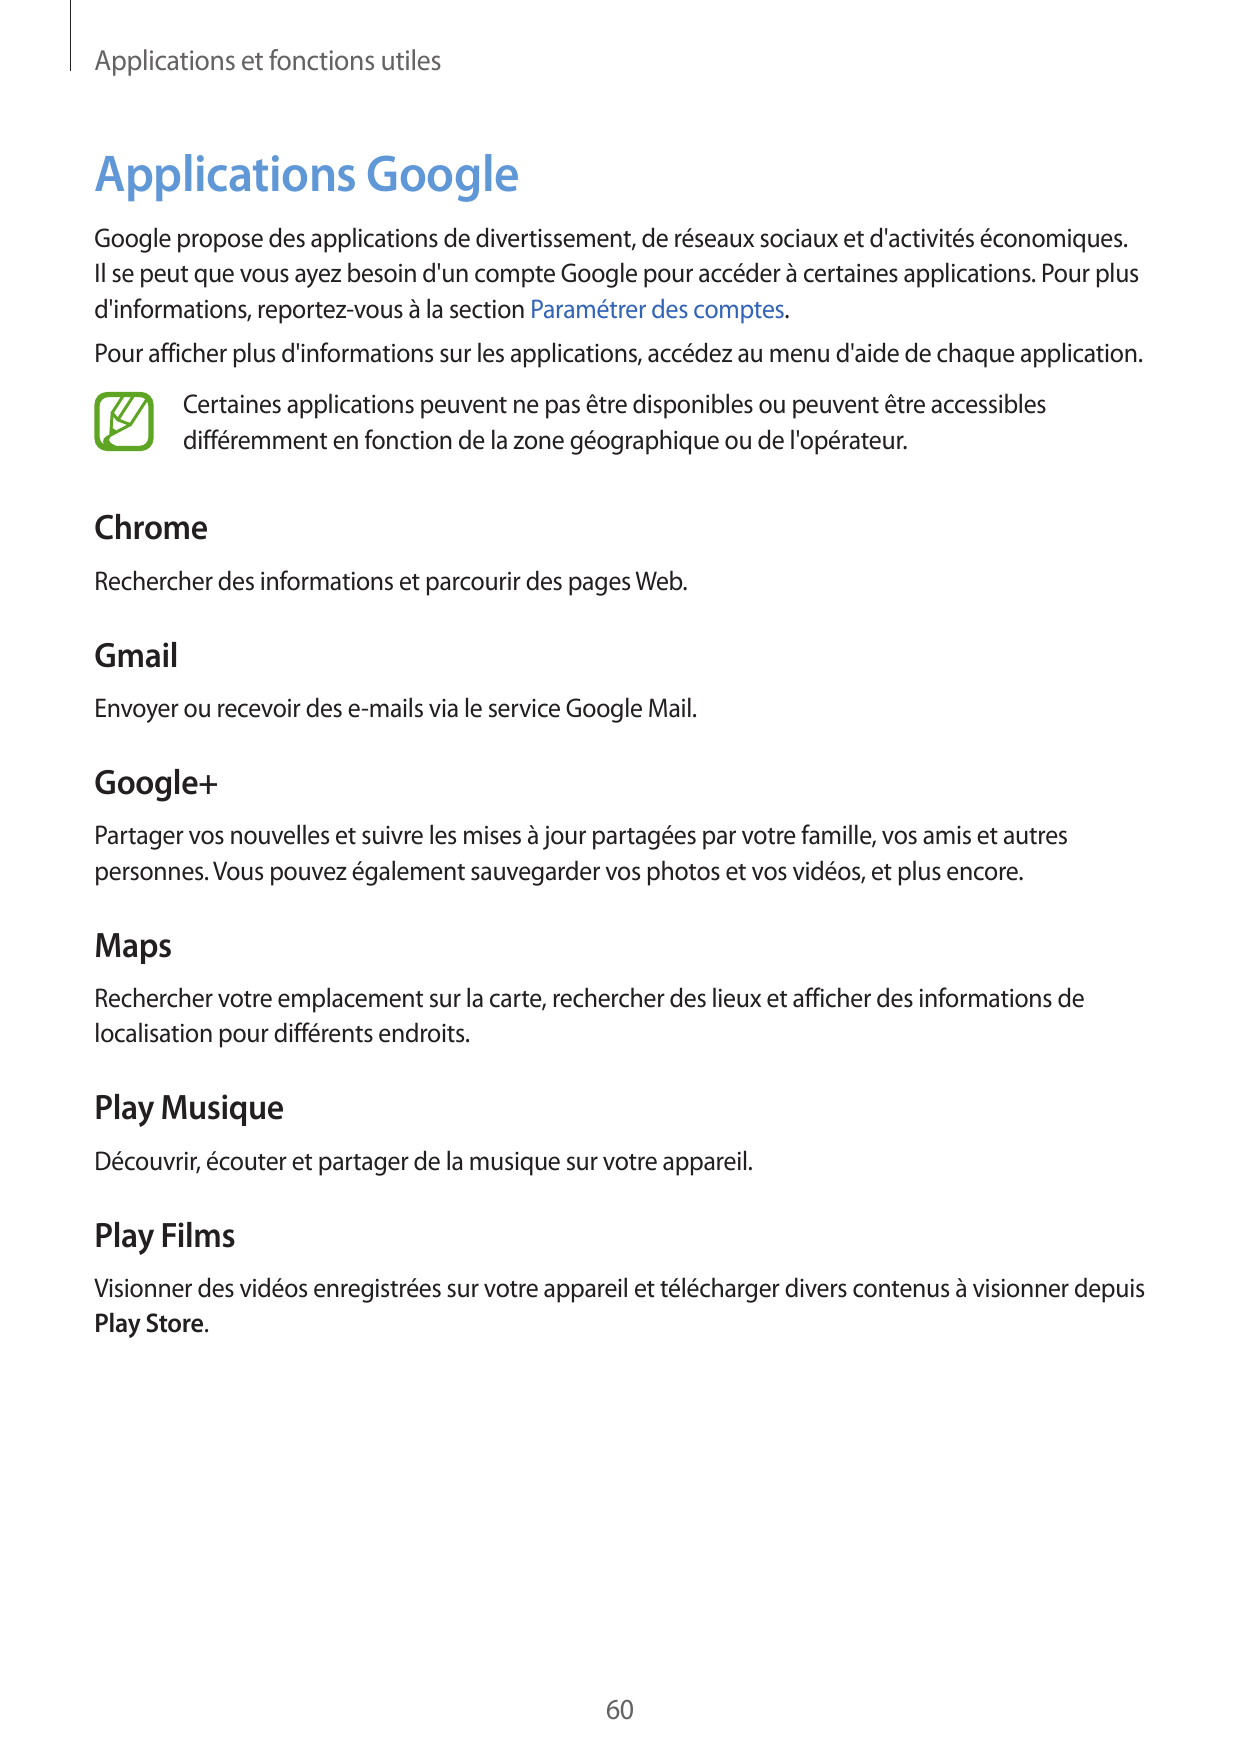 Applications et fonctions utilesApplications GoogleGoogle propose des applications de divertissement, de réseaux sociaux et d'ac